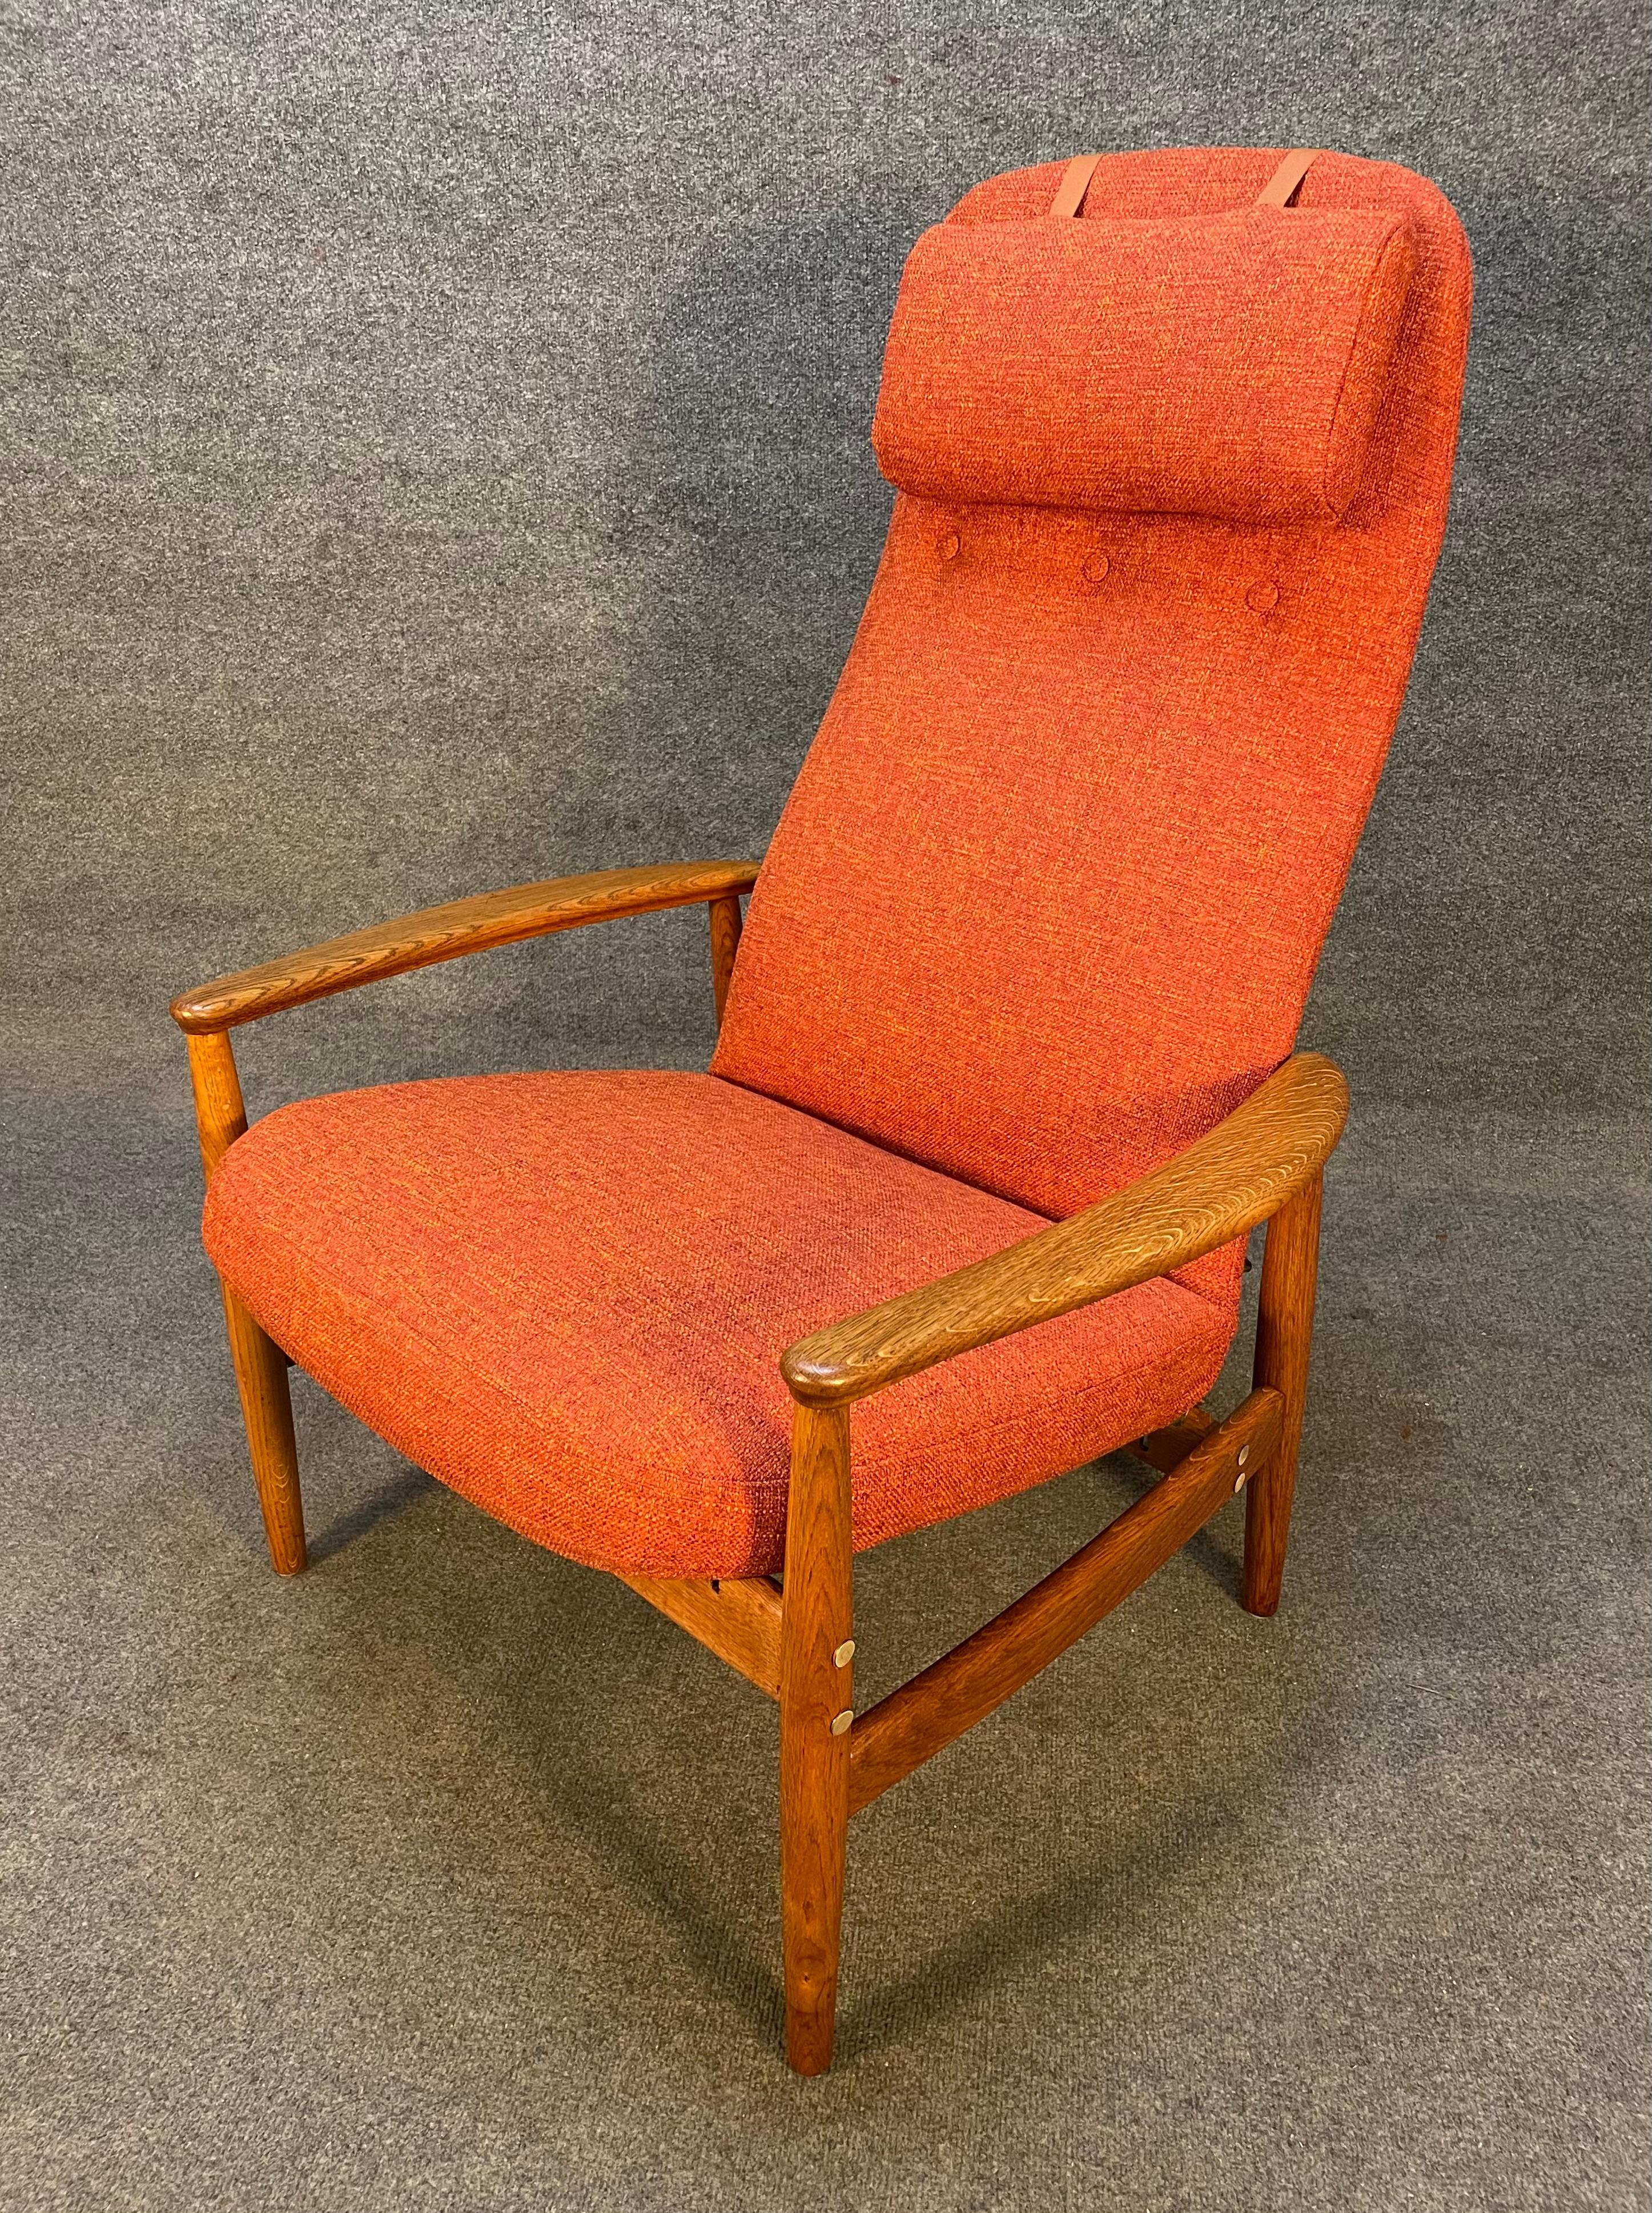 Here is a beautiful scandinavian modern oak lounge chair model 